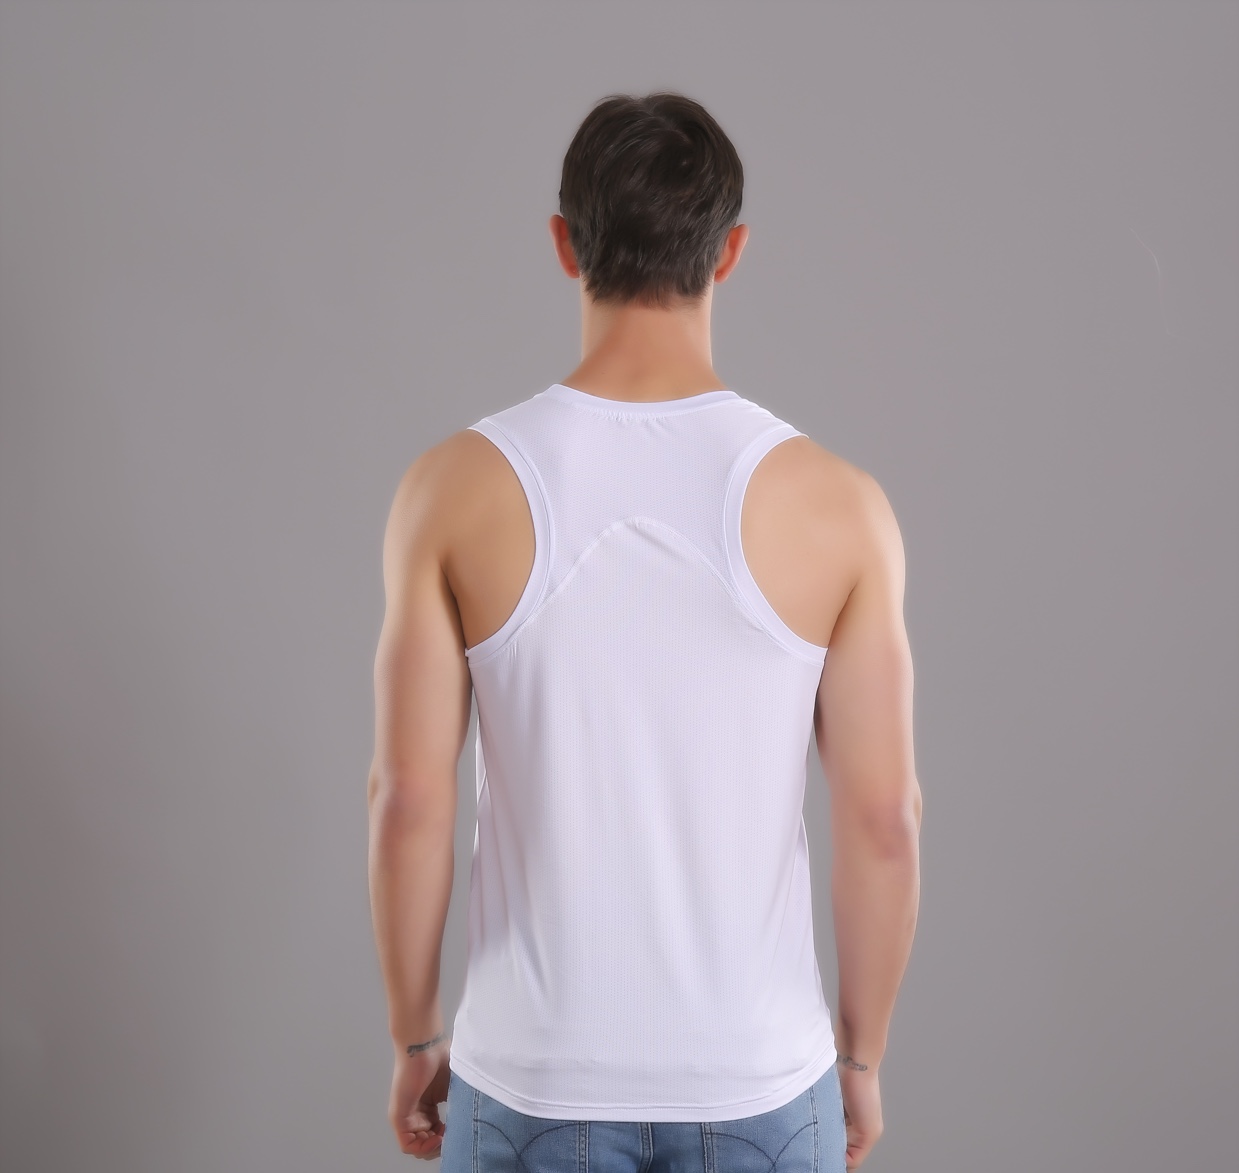 夏季新款男士速干运动背心短袖T恤跑步训练篮球贴身透气网孔健身上衣详情图5